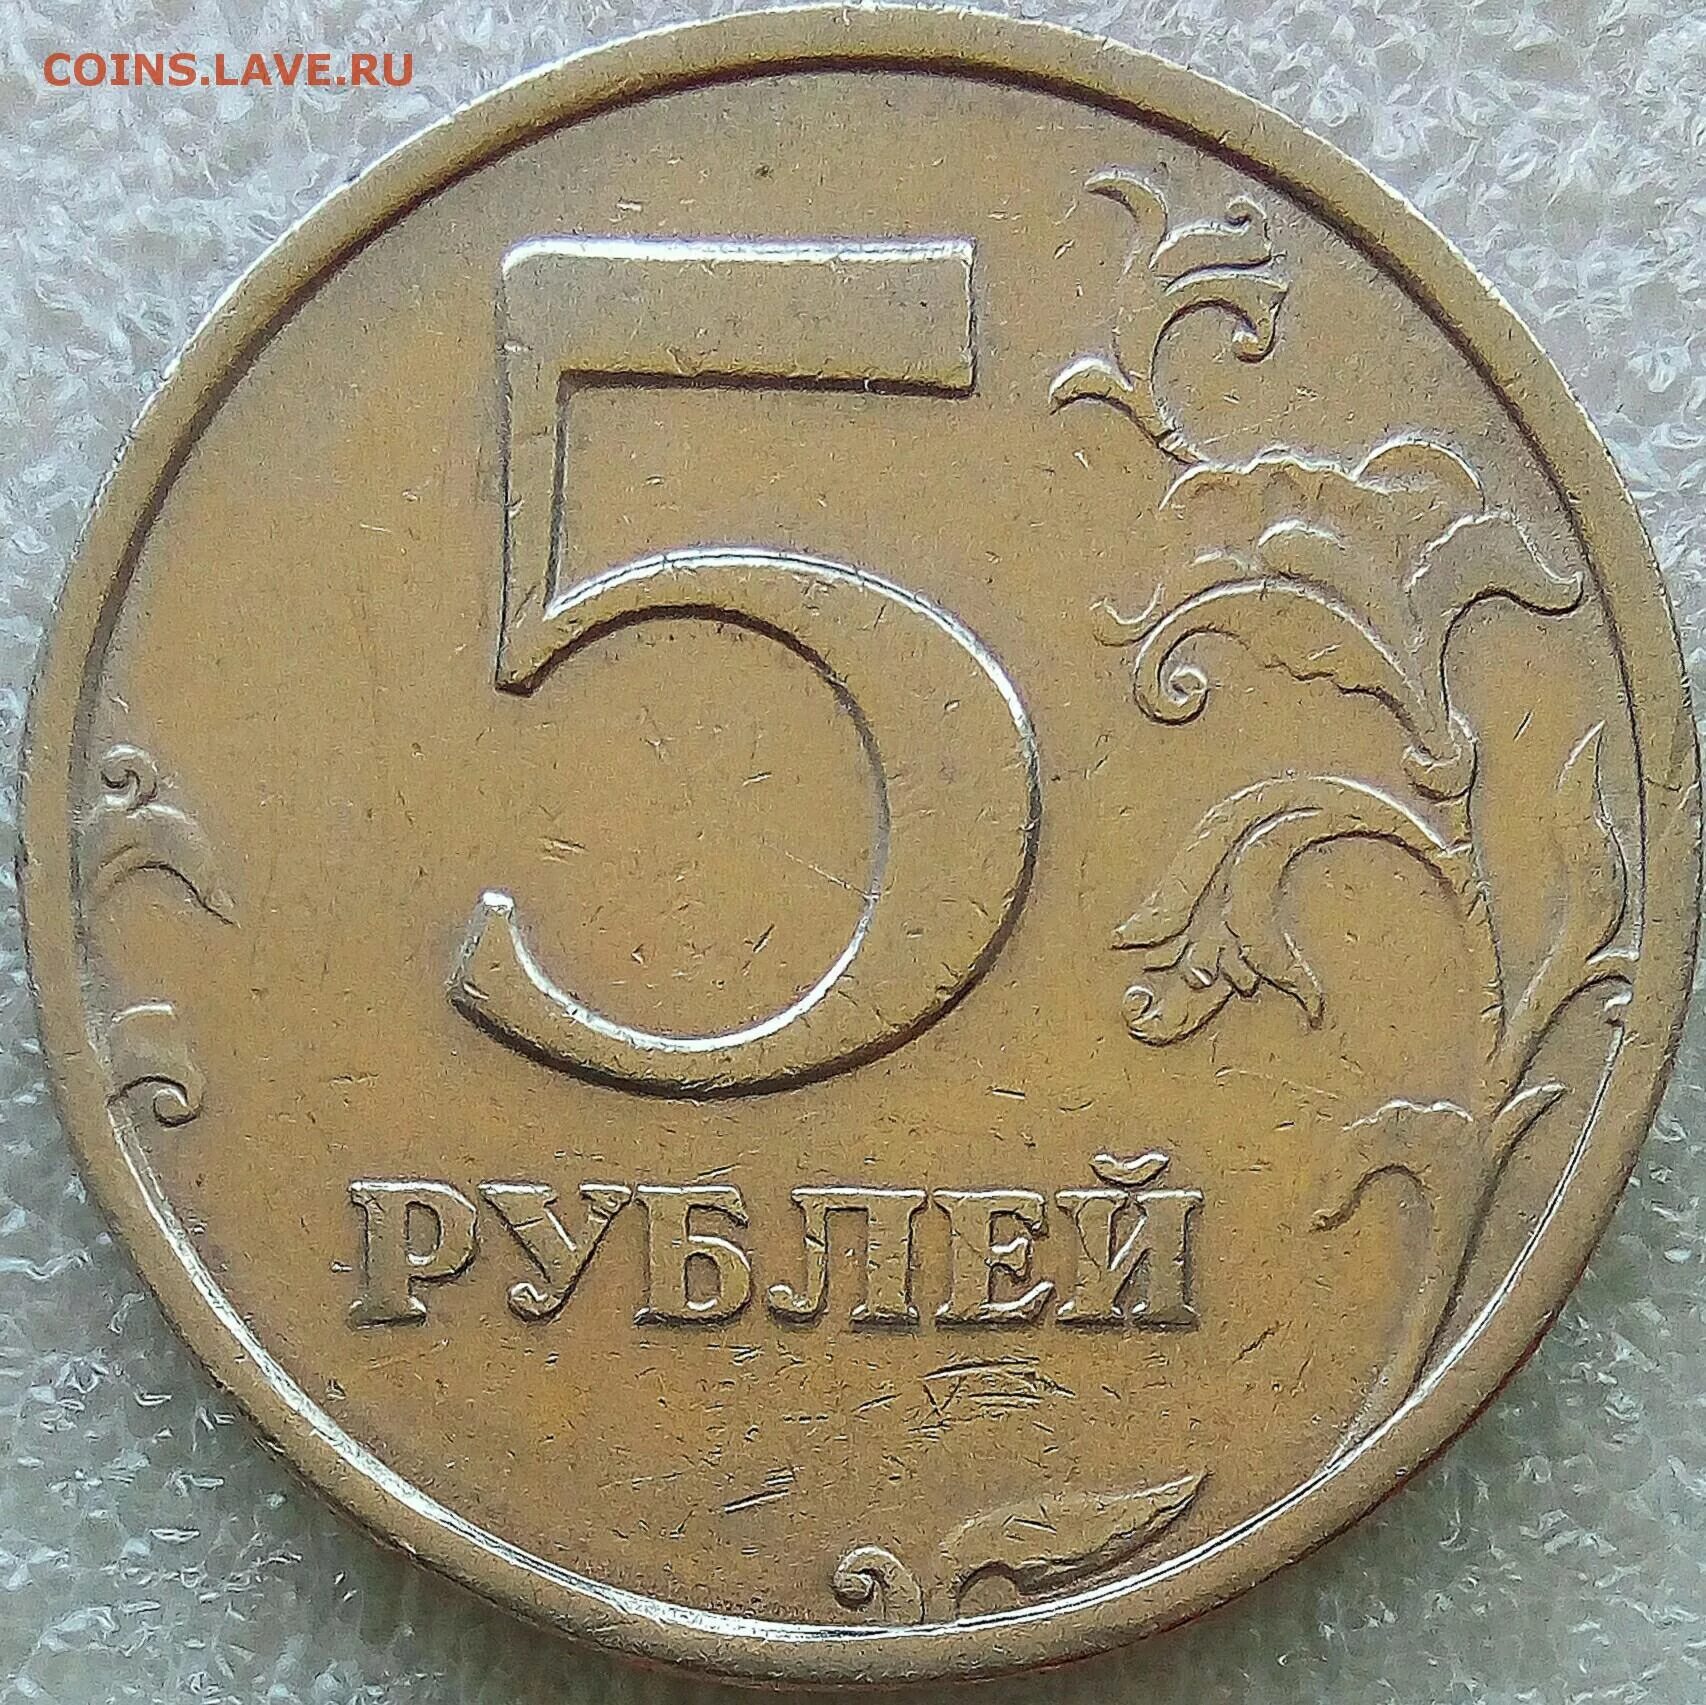 2 Рубля 2008 СП. 5 Рублей 1998 года в черном цвете. Покажи на фото 5 рублей 2008 года редкую. 5 Плюс 3 бонусная монета. 5 рублей редкие года